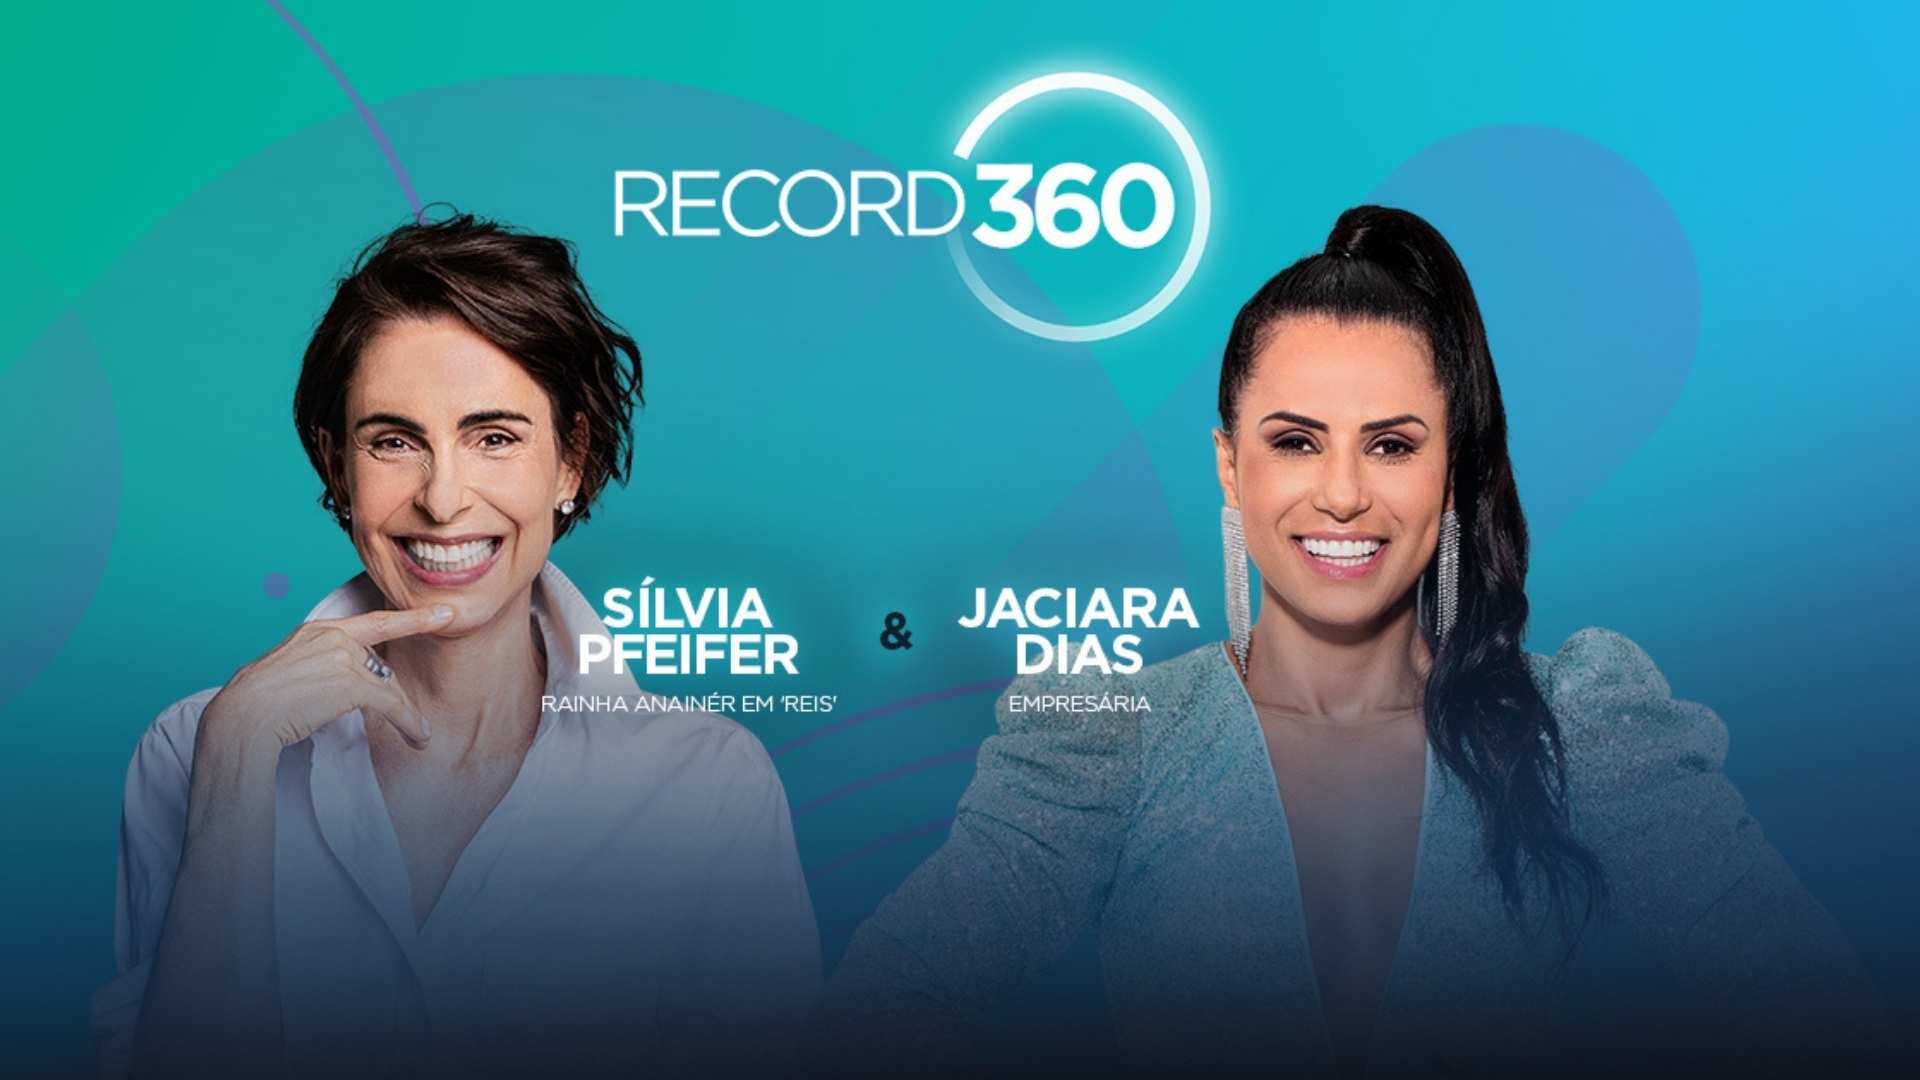 Silva Pfeifer e Jaciara Dias no Live do Record 360